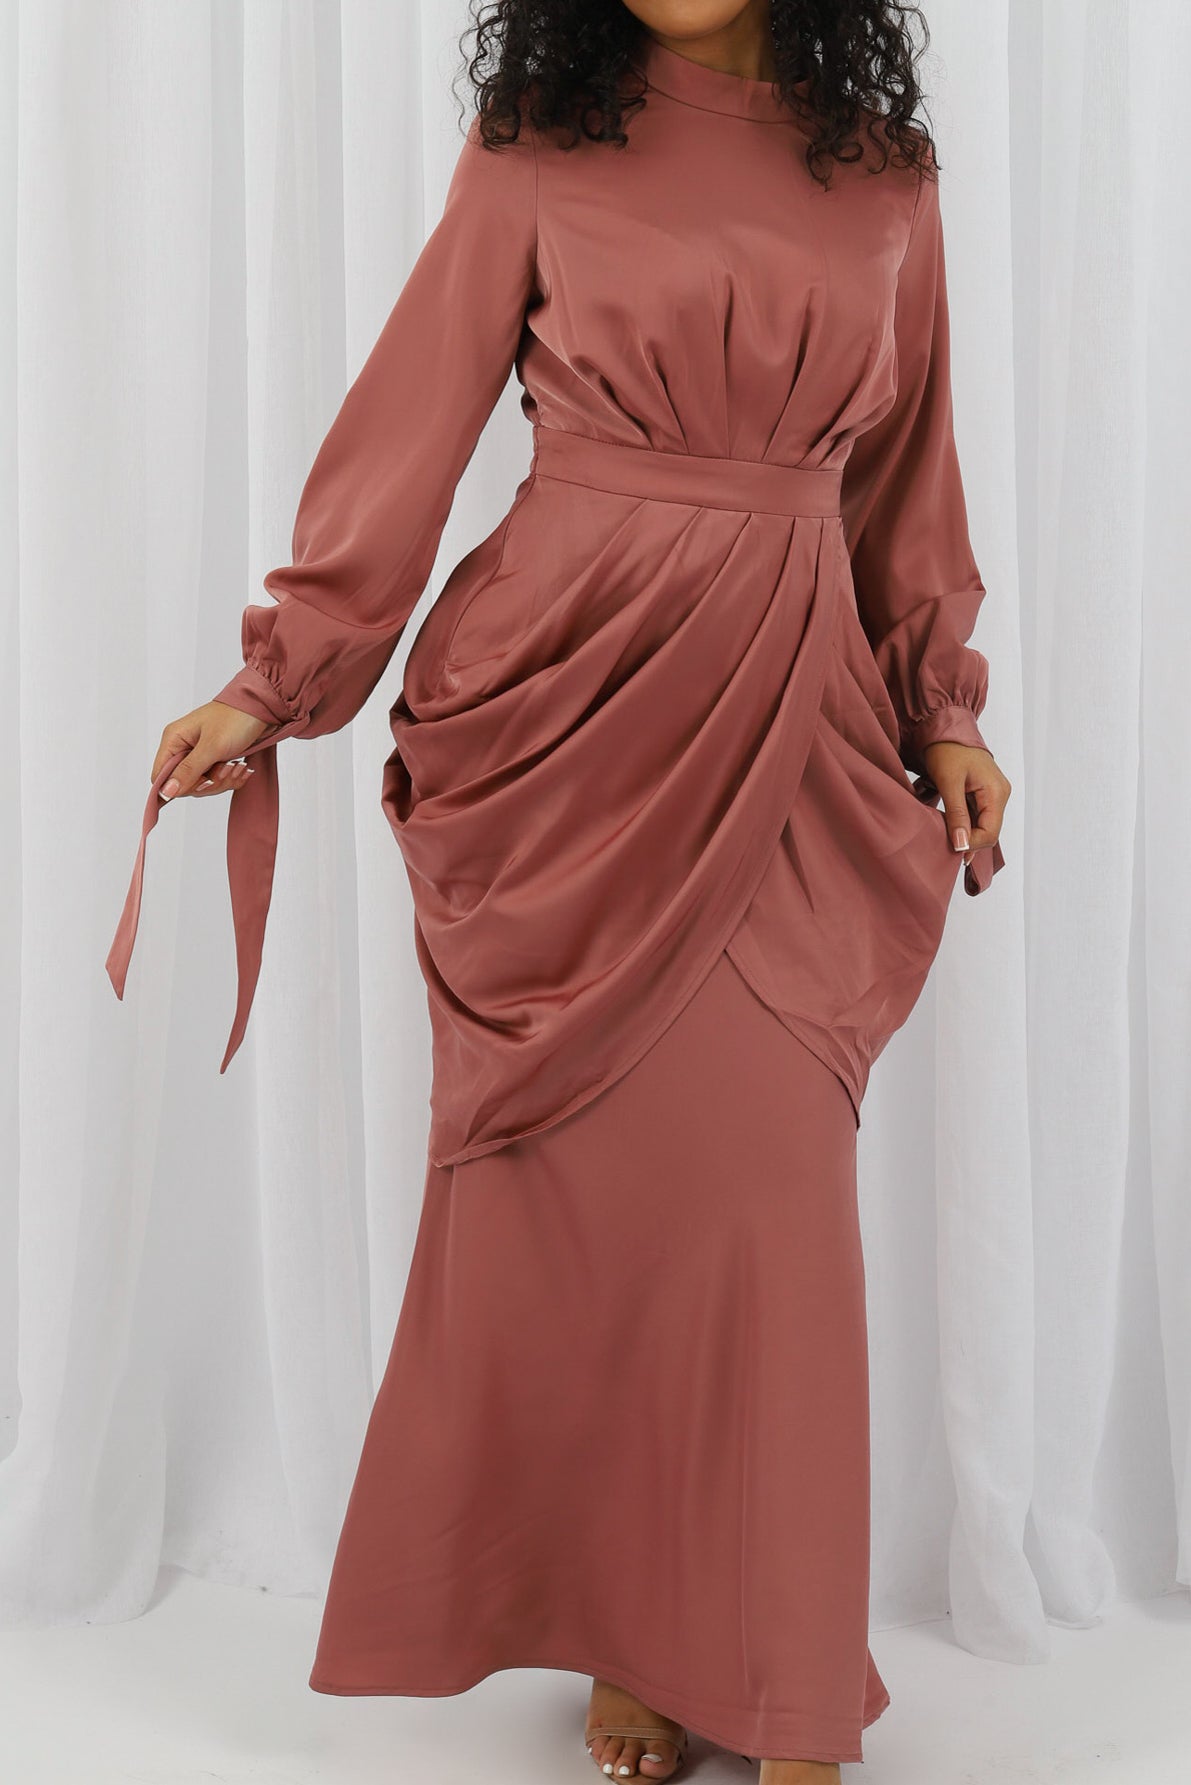 M7870Salmon-dress-abaya